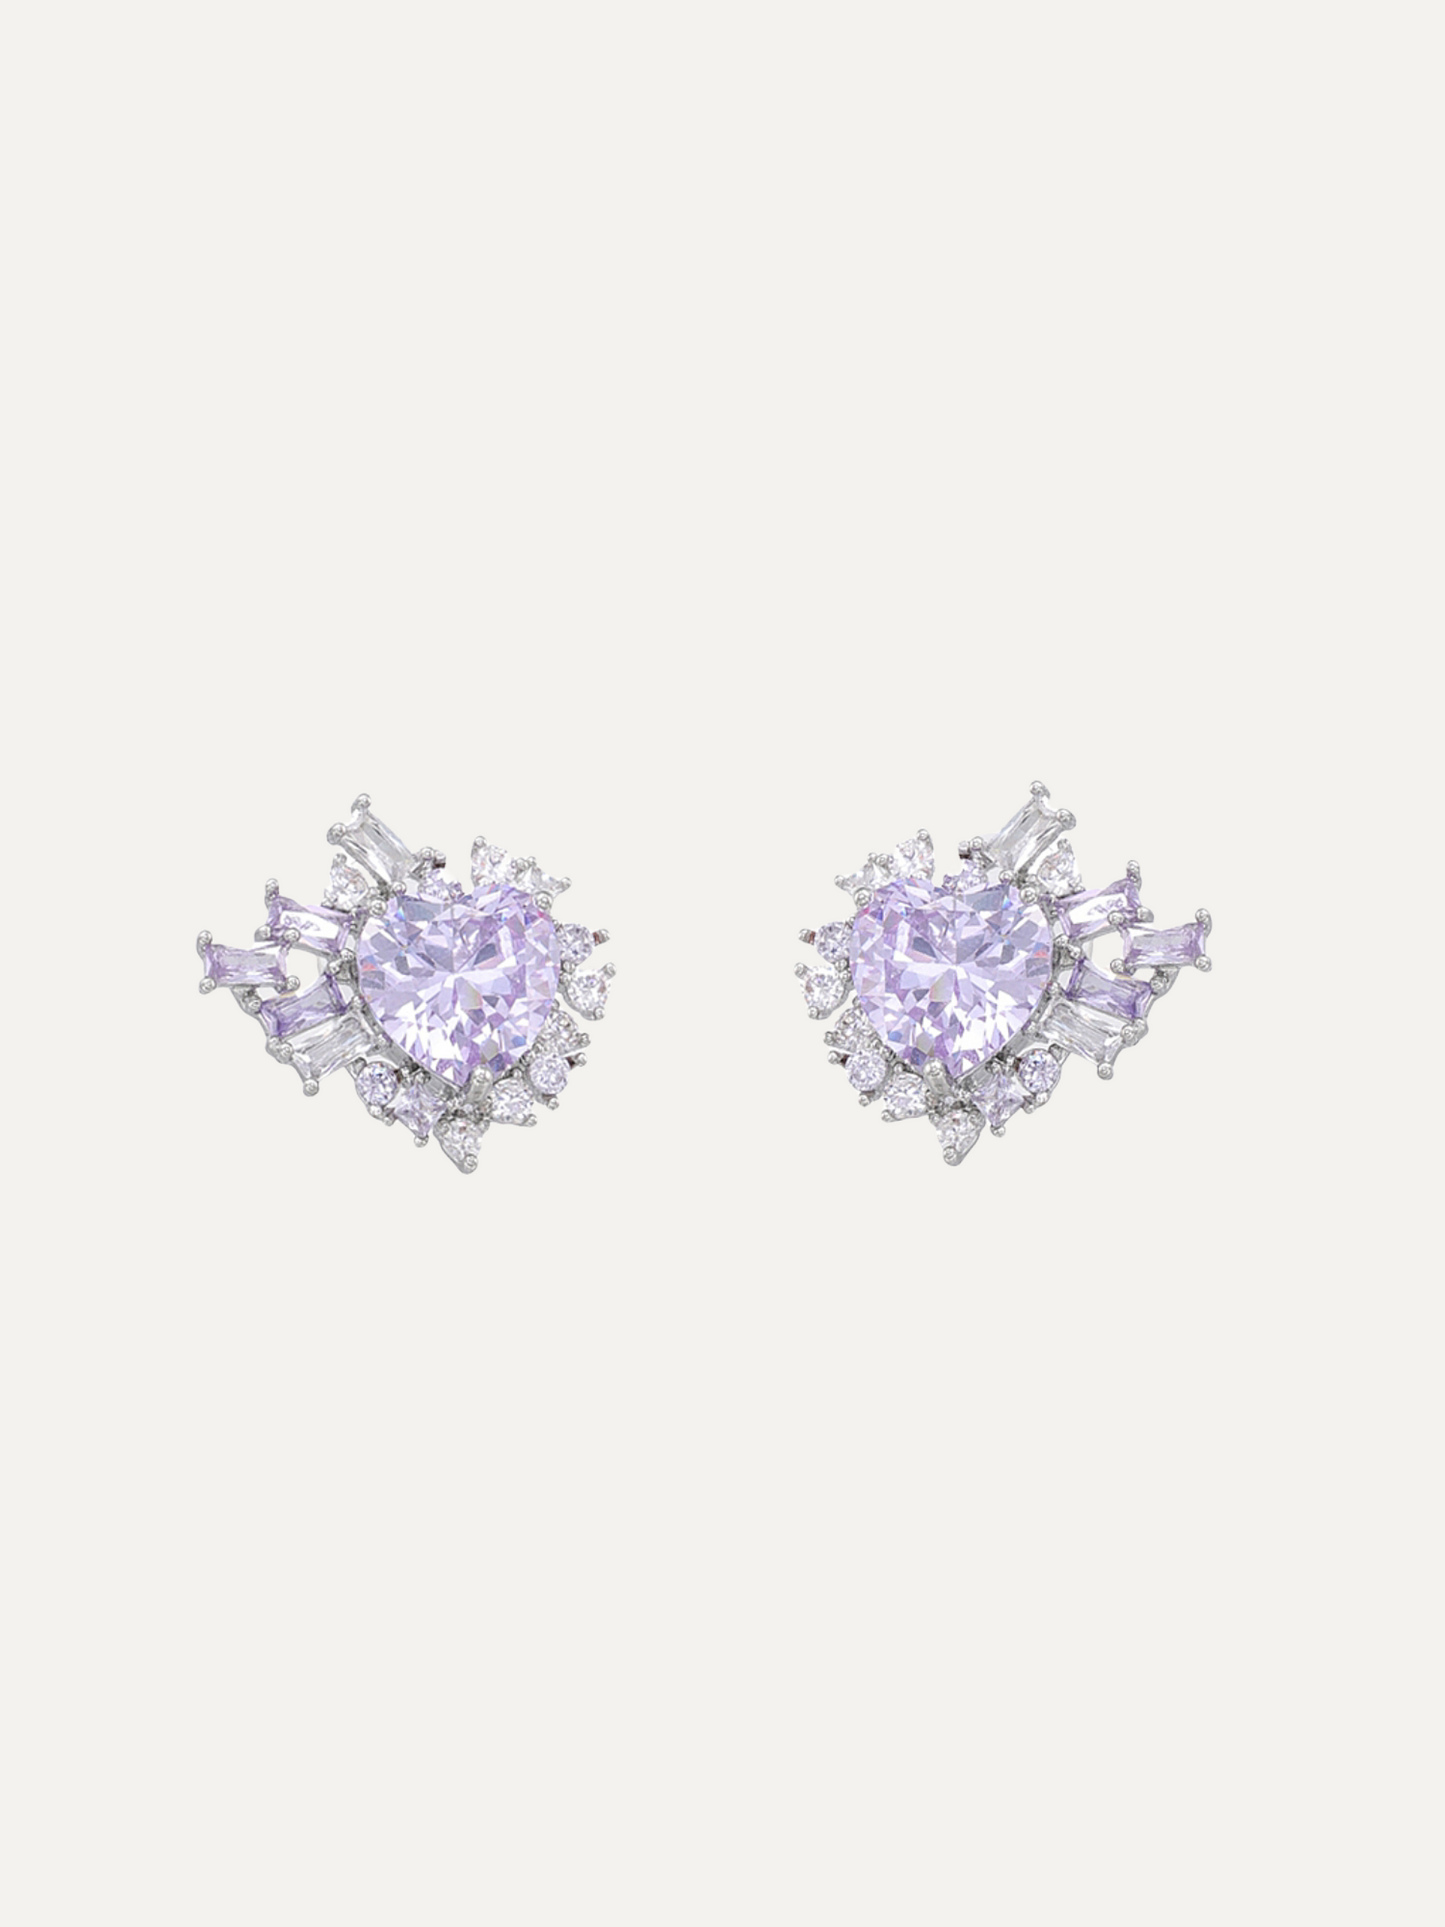 Mysterious Series Romantic Purple Silver Hypoallergenic Heart Earrings For Women